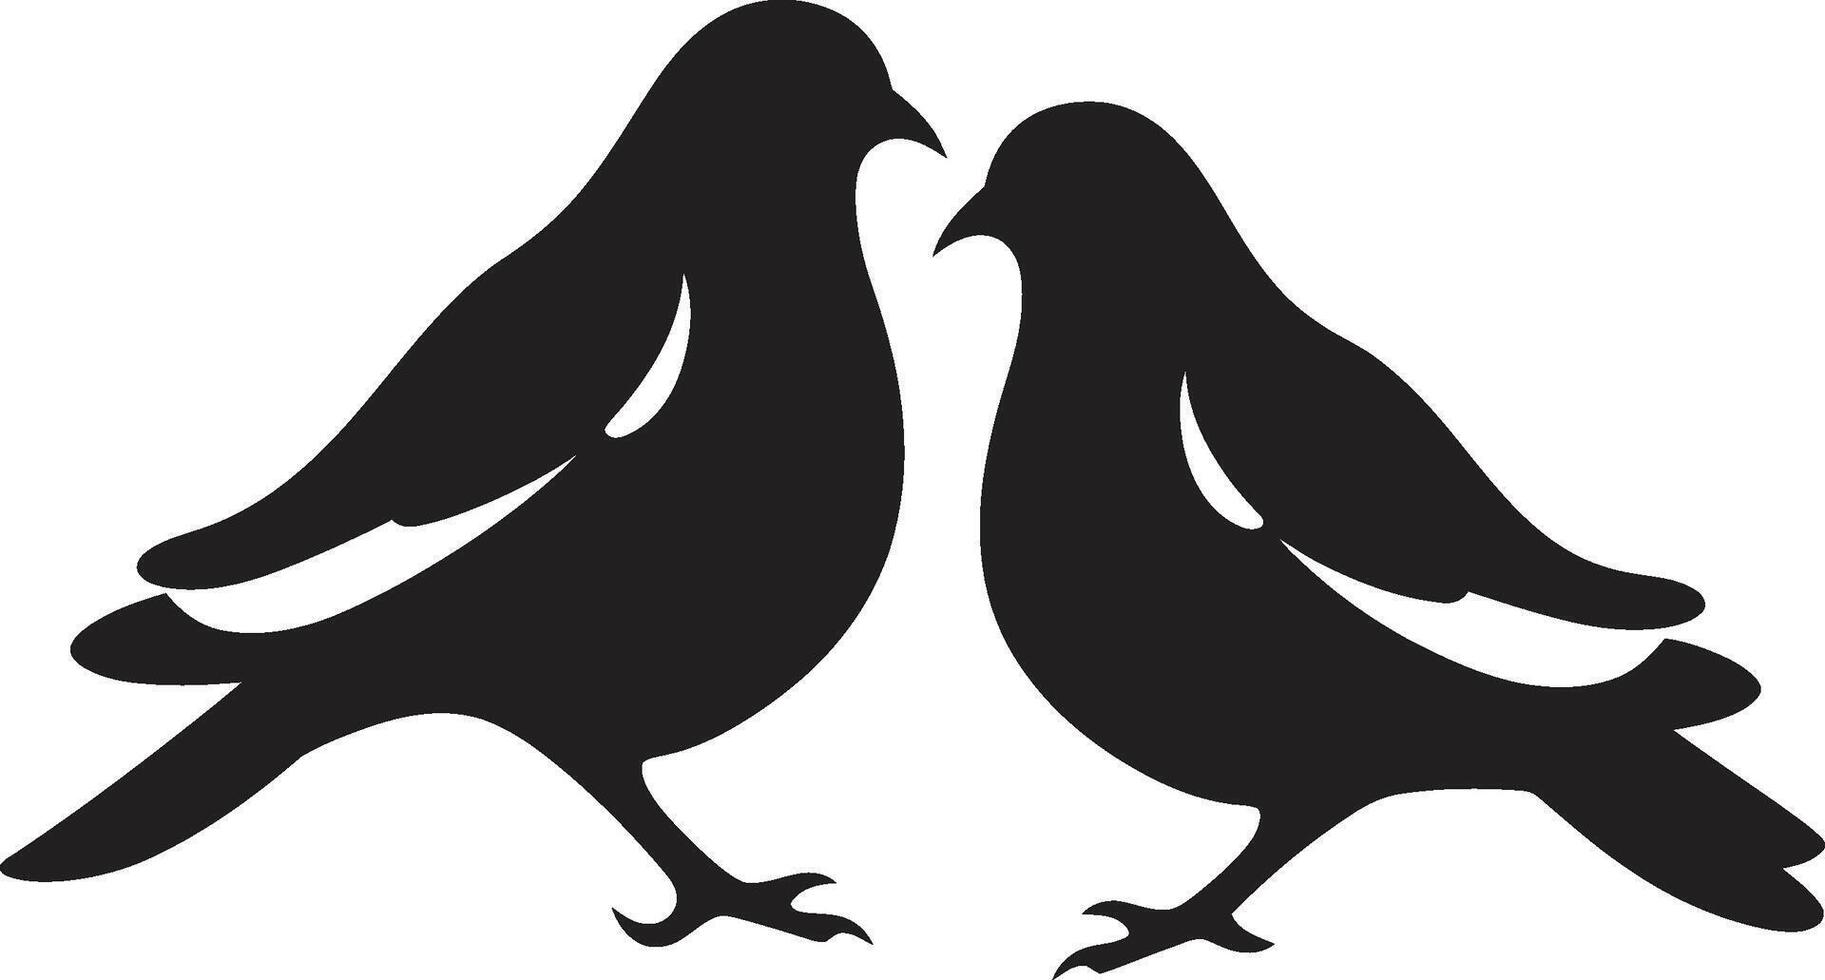 Harmonie im Flug Taube Paar Element symbolisch Gelassenheit von ein Taube Paar vektor